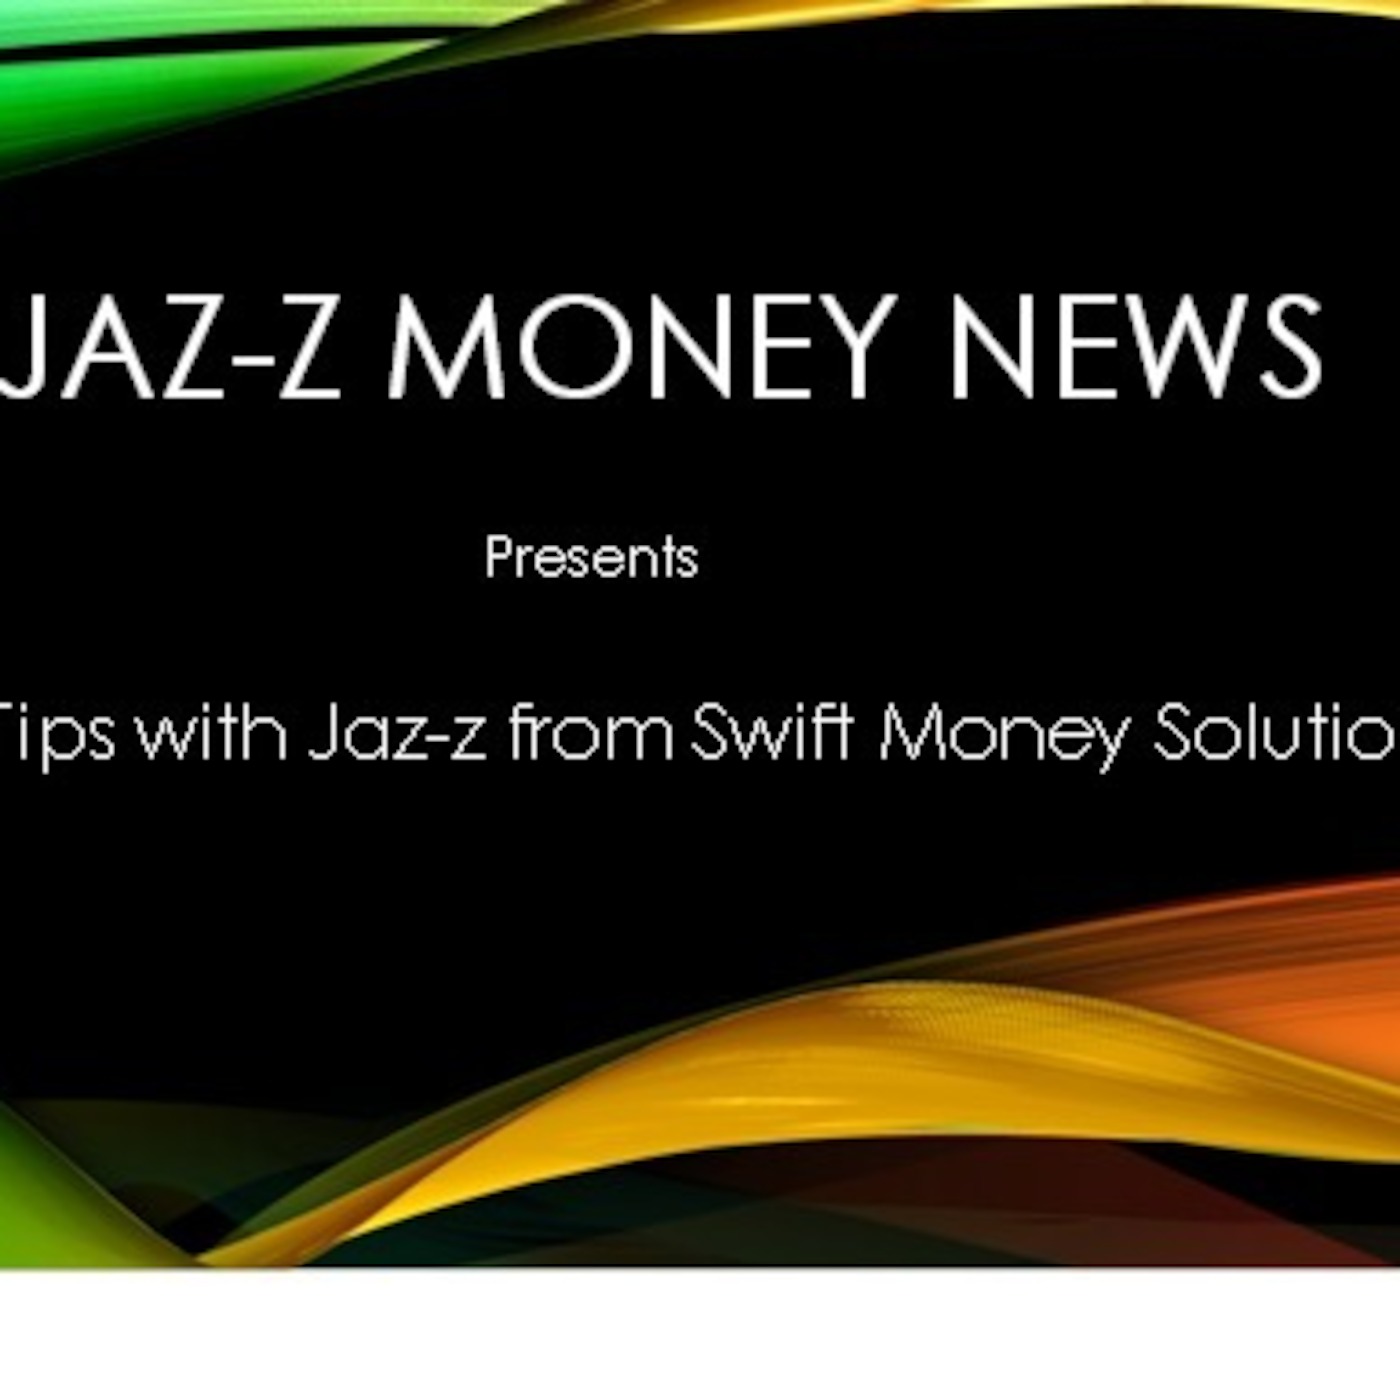 JAZ-Z & WJAZ-Z Daily Money Empowering Tip#4